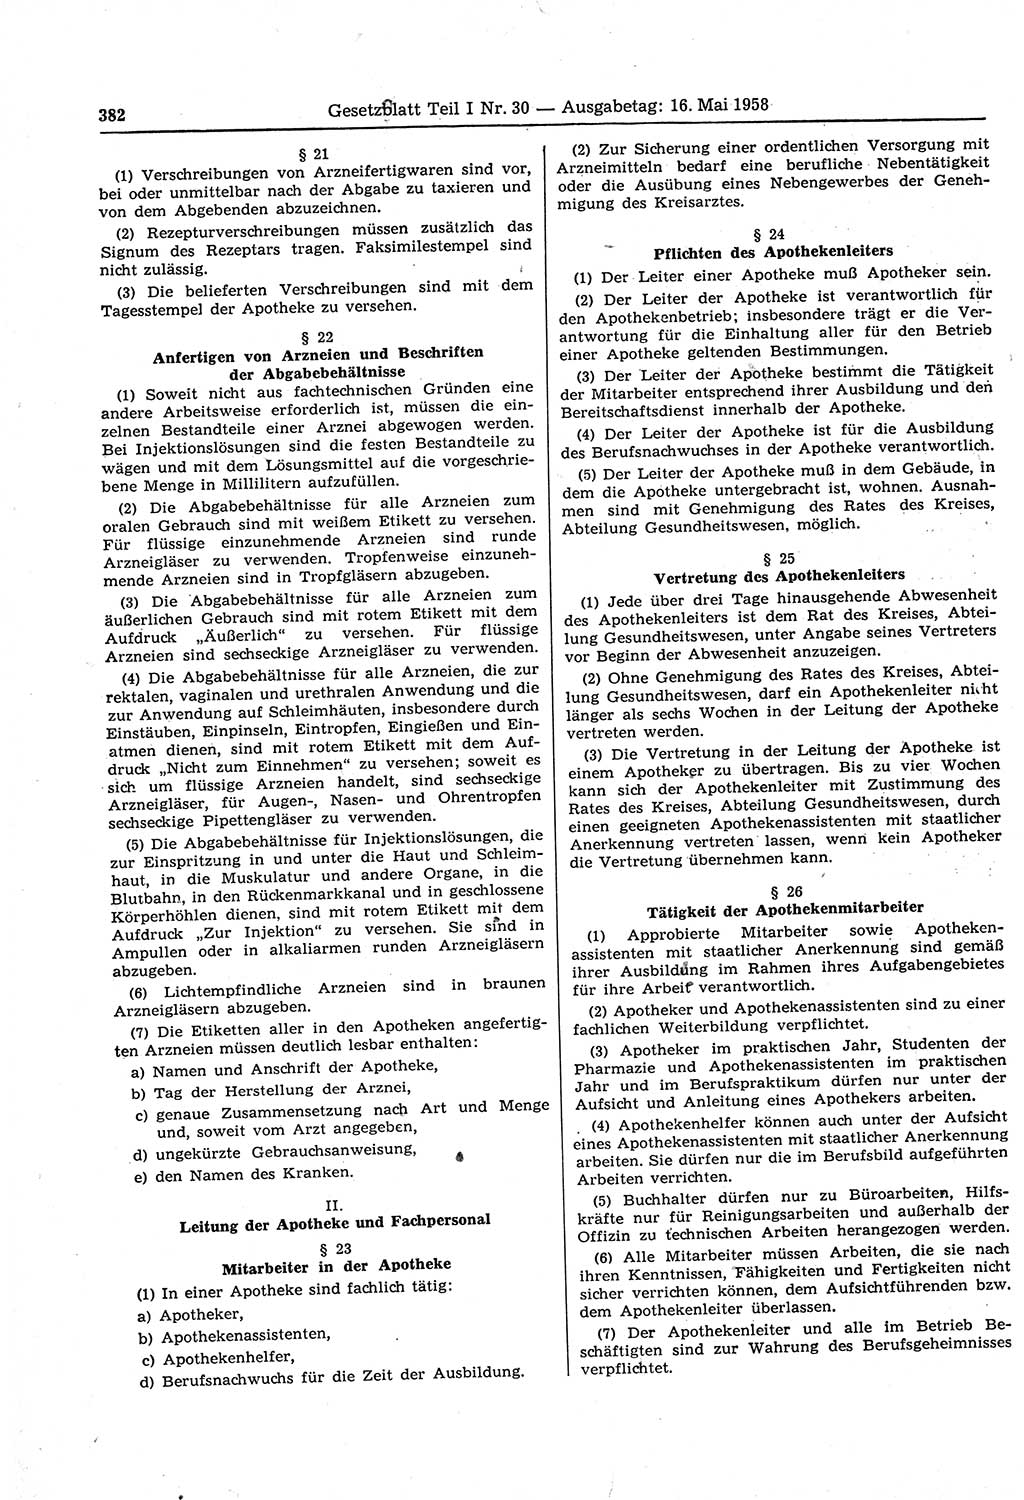 Gesetzblatt (GBl.) der Deutschen Demokratischen Republik (DDR) Teil Ⅰ 1958, Seite 382 (GBl. DDR Ⅰ 1958, S. 382)